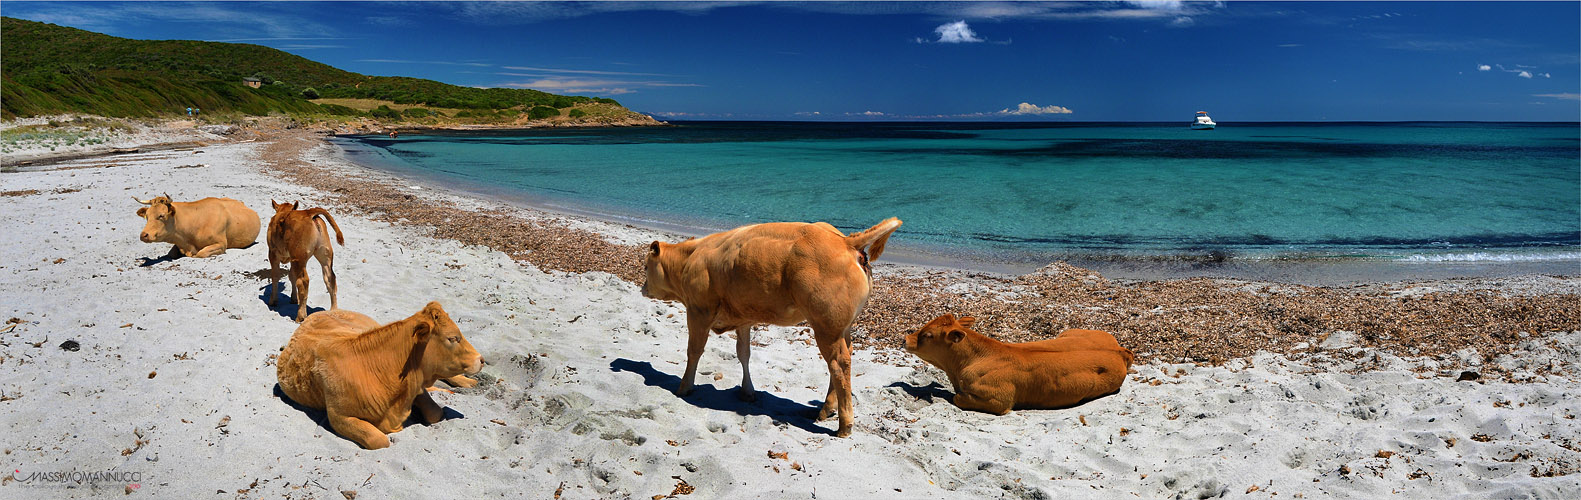 Η ατραξιόν της Κορσικής:40.000 άγριες αγελάδες που δεν γουστάρουν..selfie!! - Φωτογραφία 9